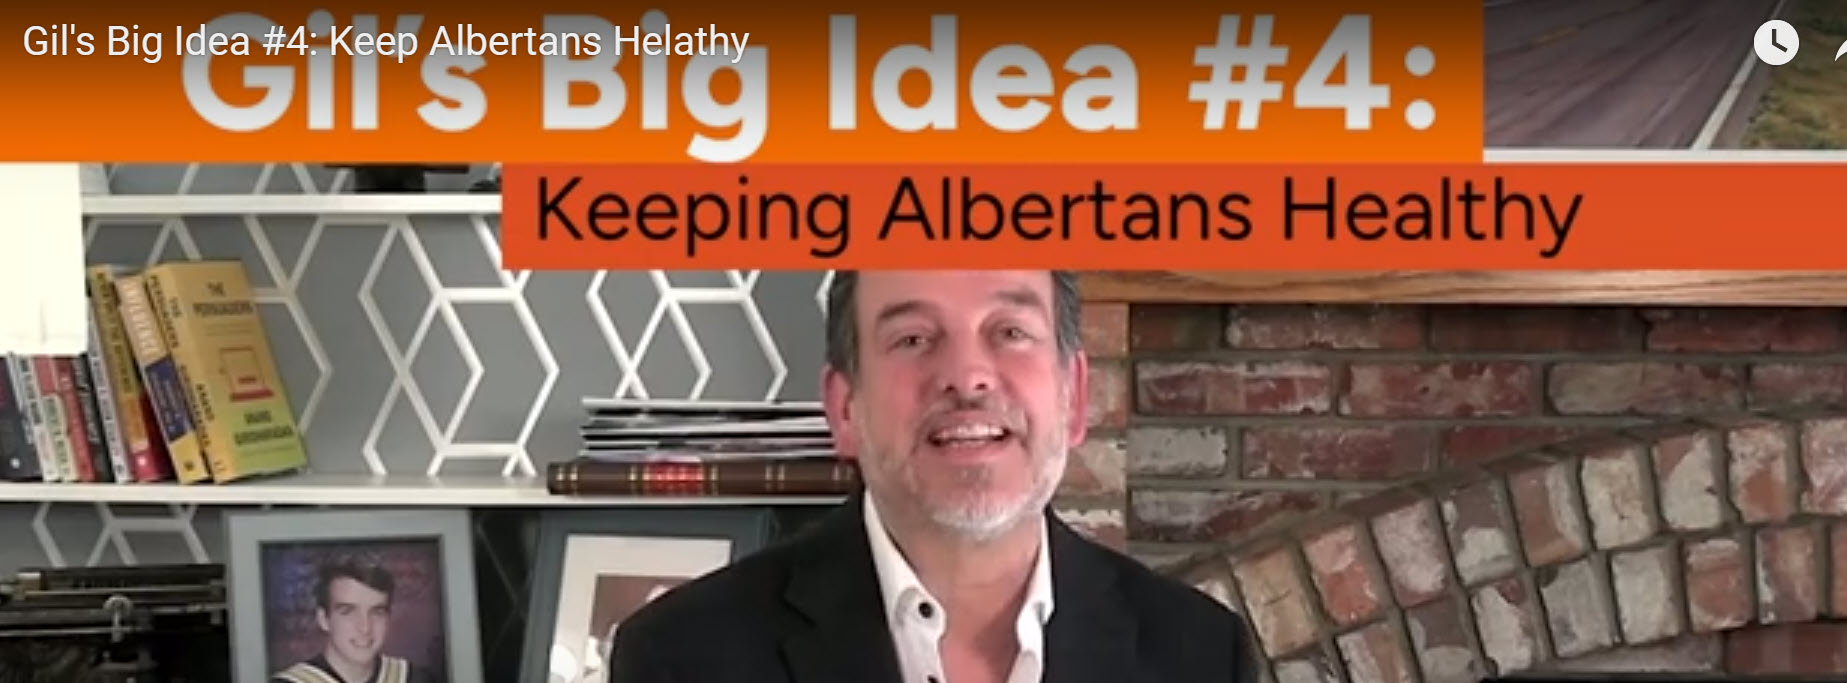 Big idea #4: keeping Albertans healthy